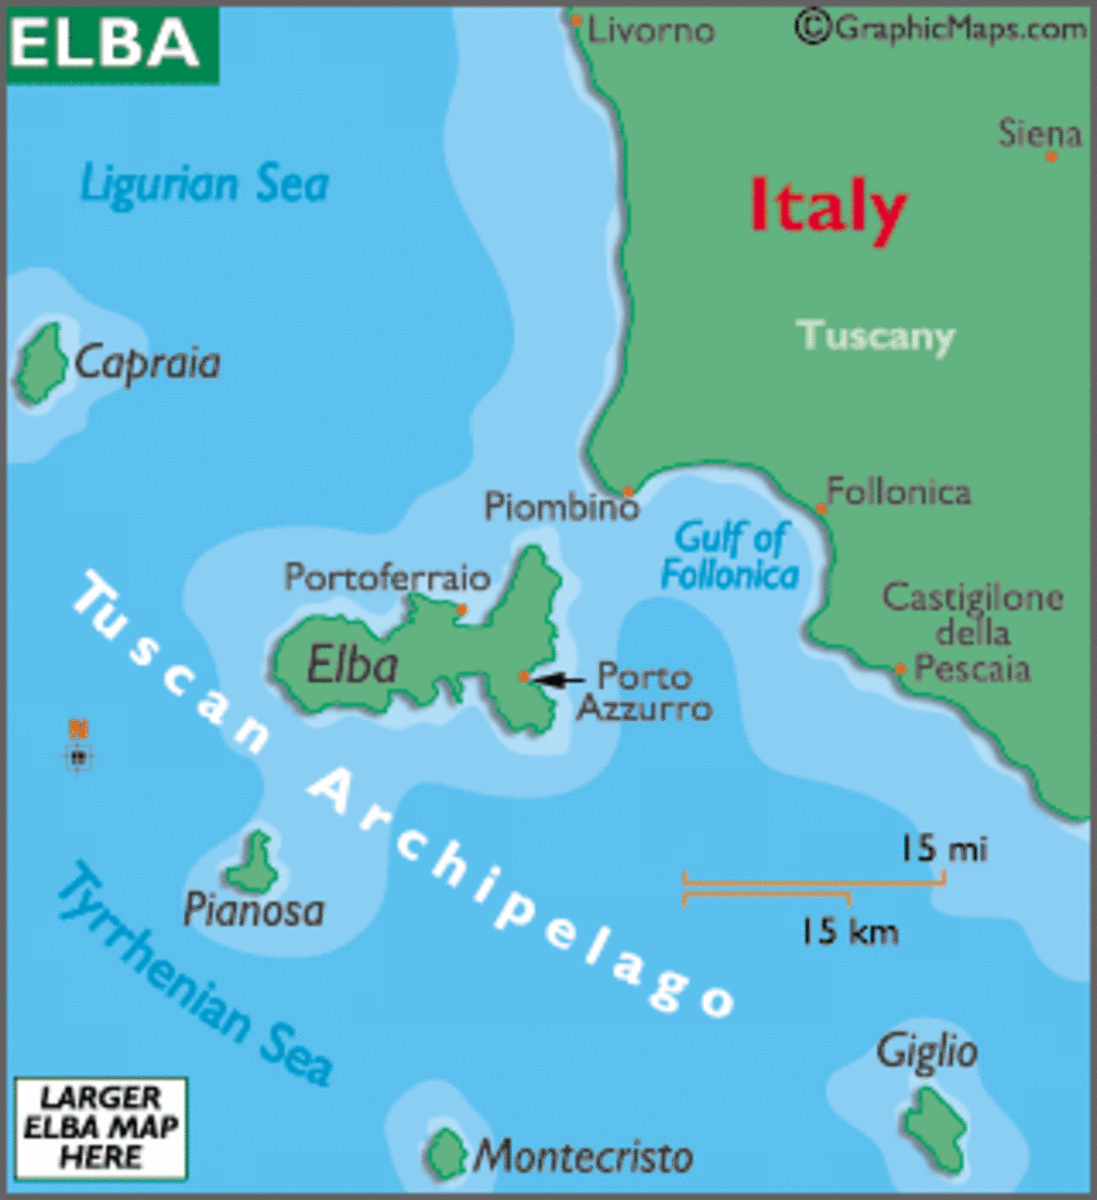 Island of Elba near Tuscany coast